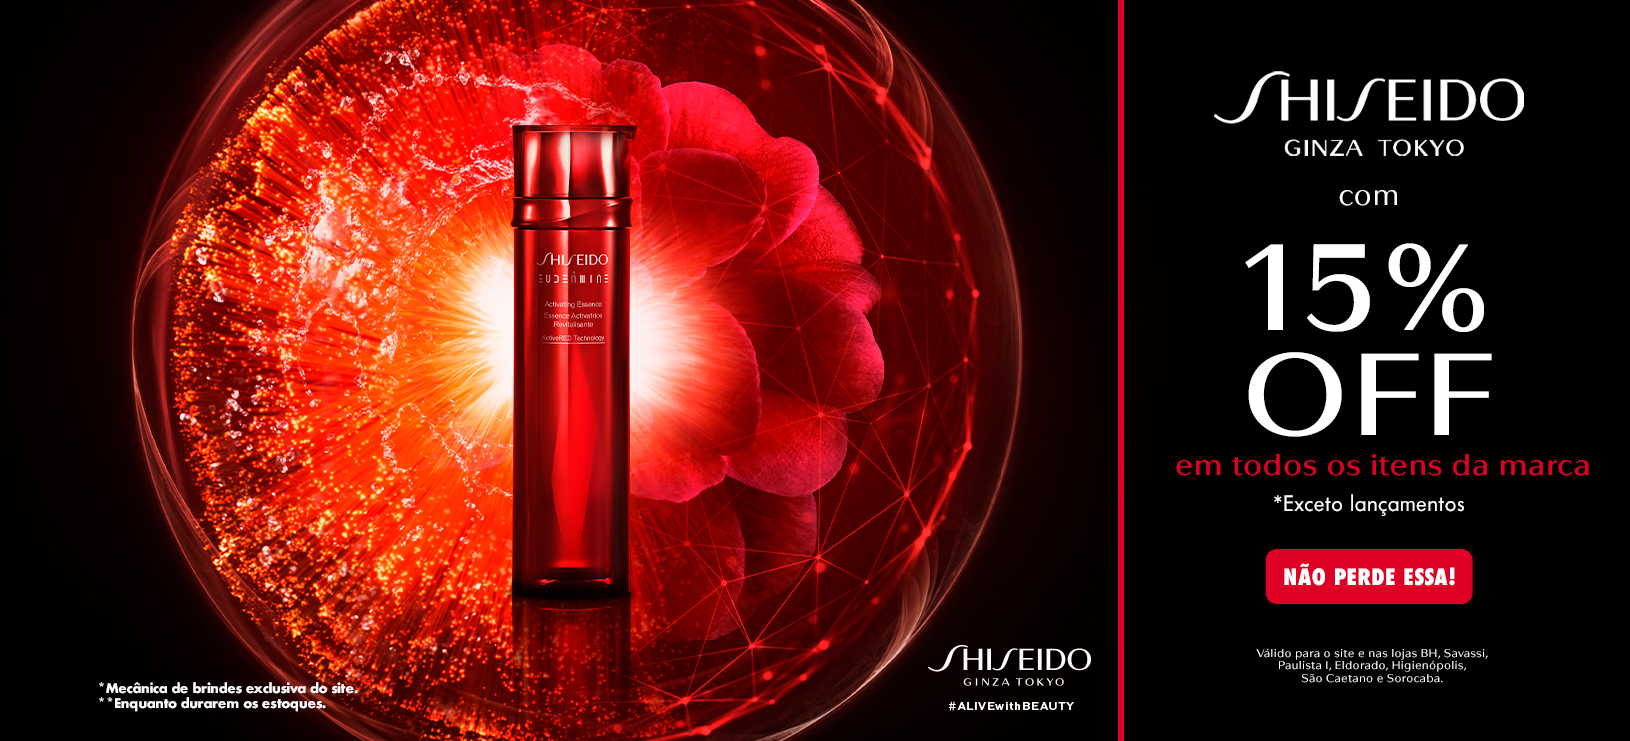 shiseido-15off-banner-desktop